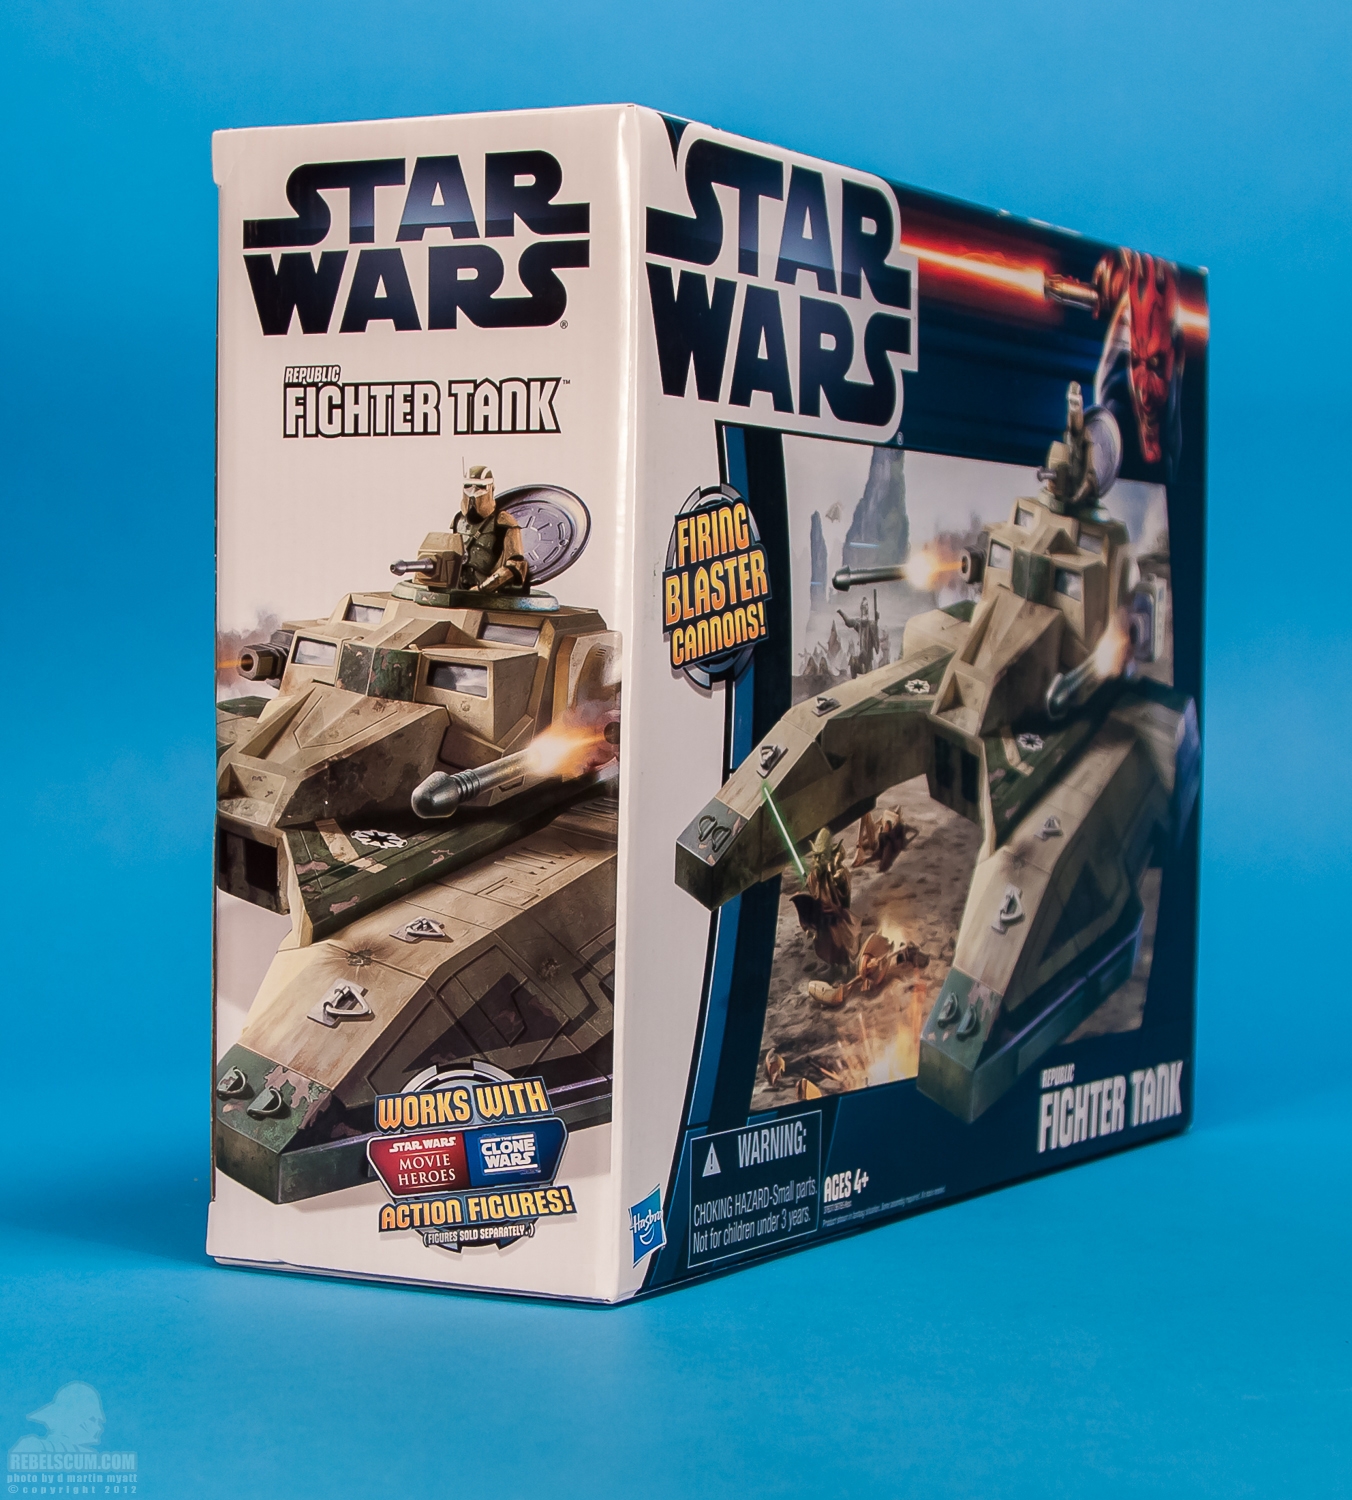 Republic_Fighter_Tank_Movie_Heroes_Star_Wars_Vehicle_Hasbro-17.jpg